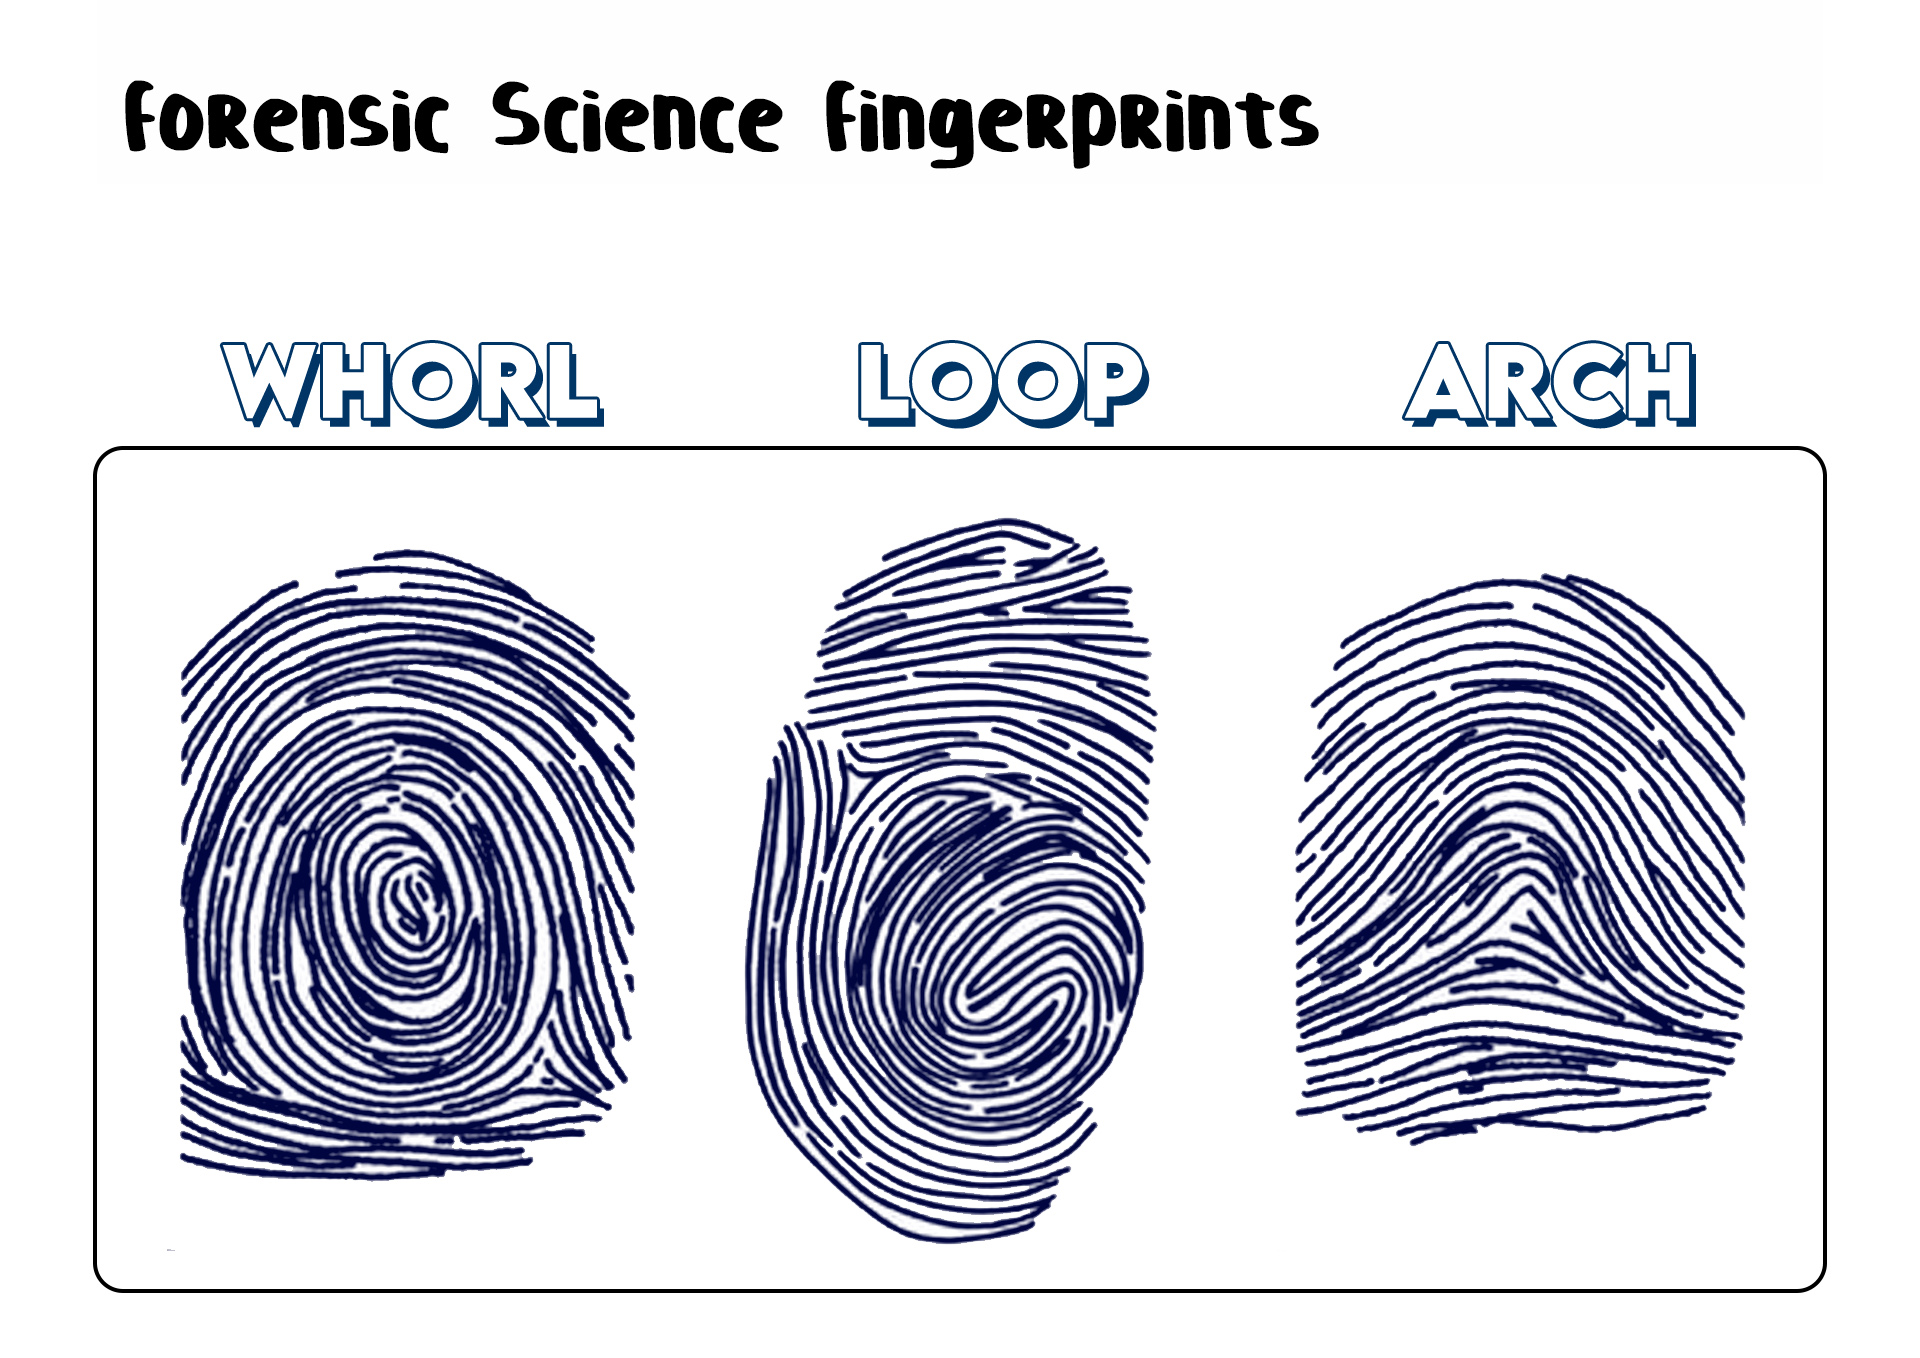 Forensic Science Fingerprints Image